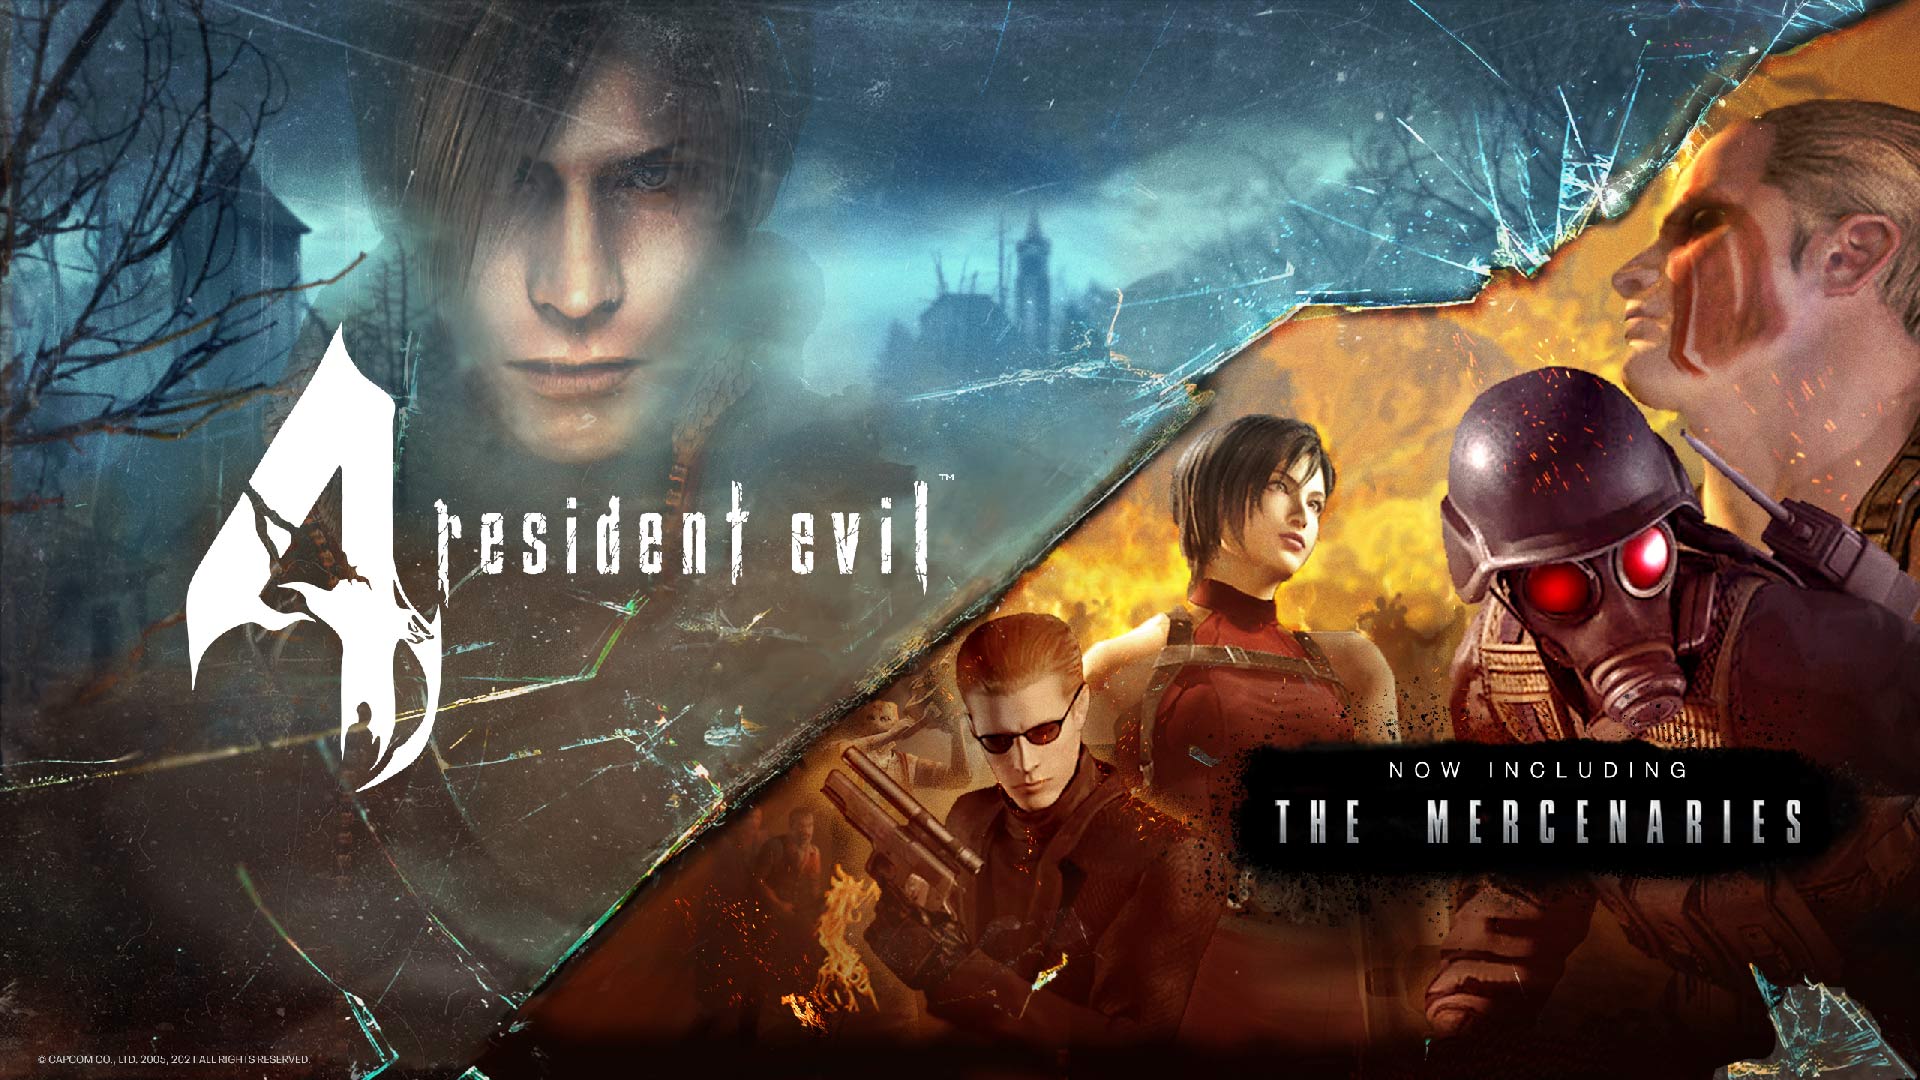 Resident Evil 4 Remake PSVR 2 gameplay revealed